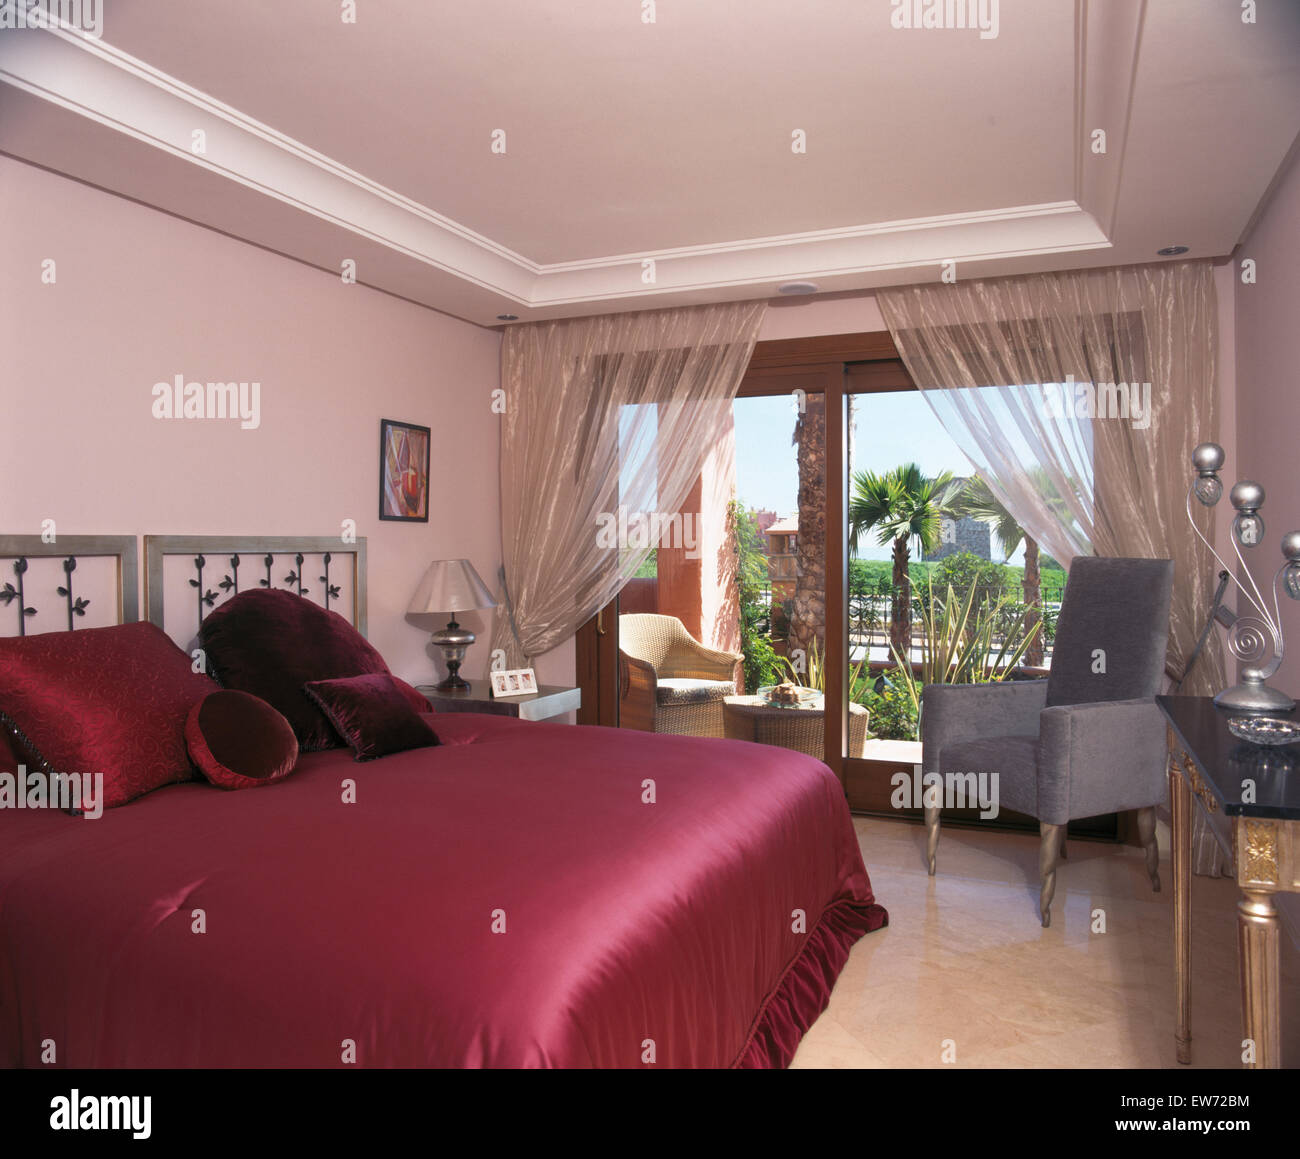 Couvre-lit en satin rose foncé sur le lit dans la chambre à coucher appartement espagnol avec rideaux d'organza sur portes de patio Banque D'Images